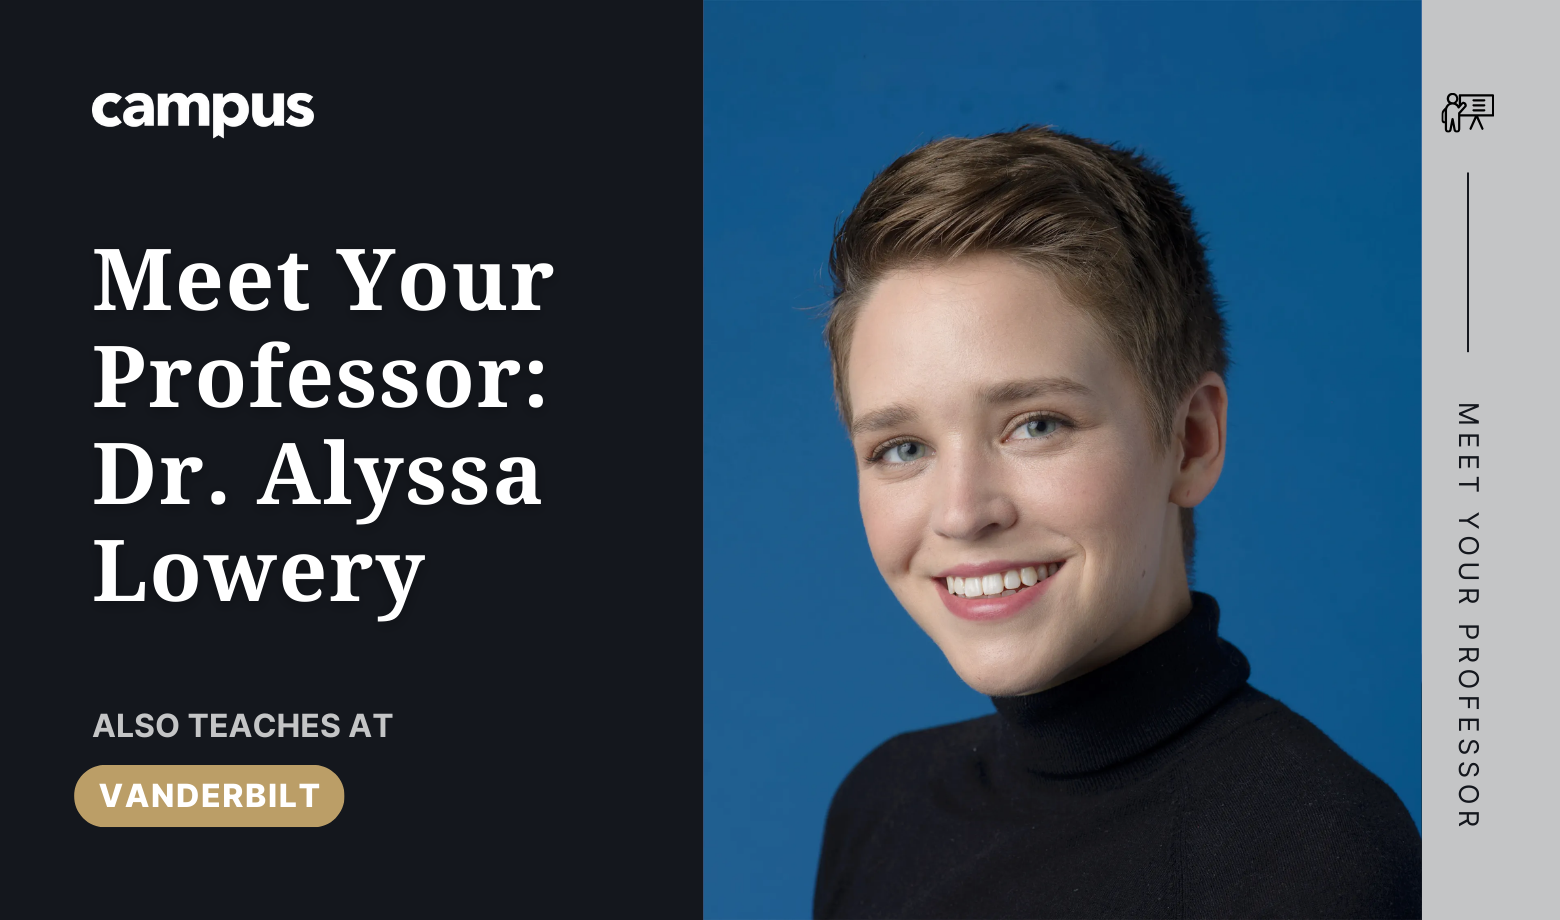 Meet Your Professor: Dr. Alyssa Lowery